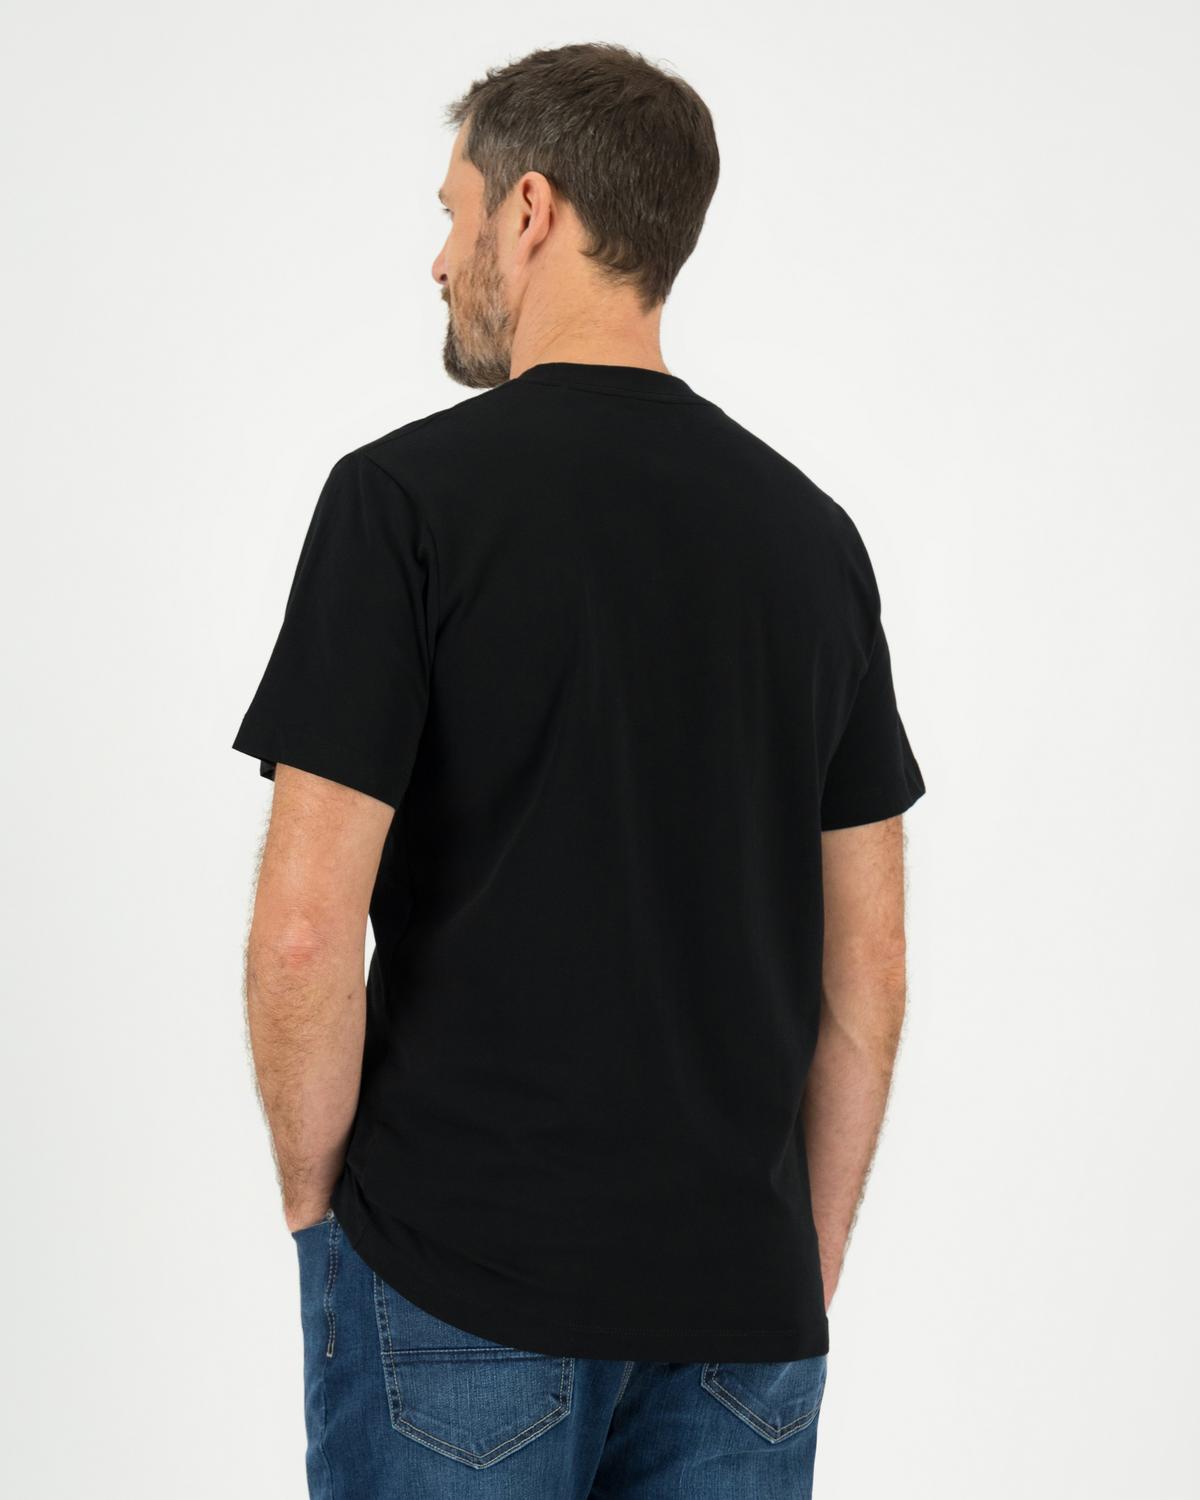 Jack Wolfskin Men’s Essential Logo Cotton T-shirt -  Black